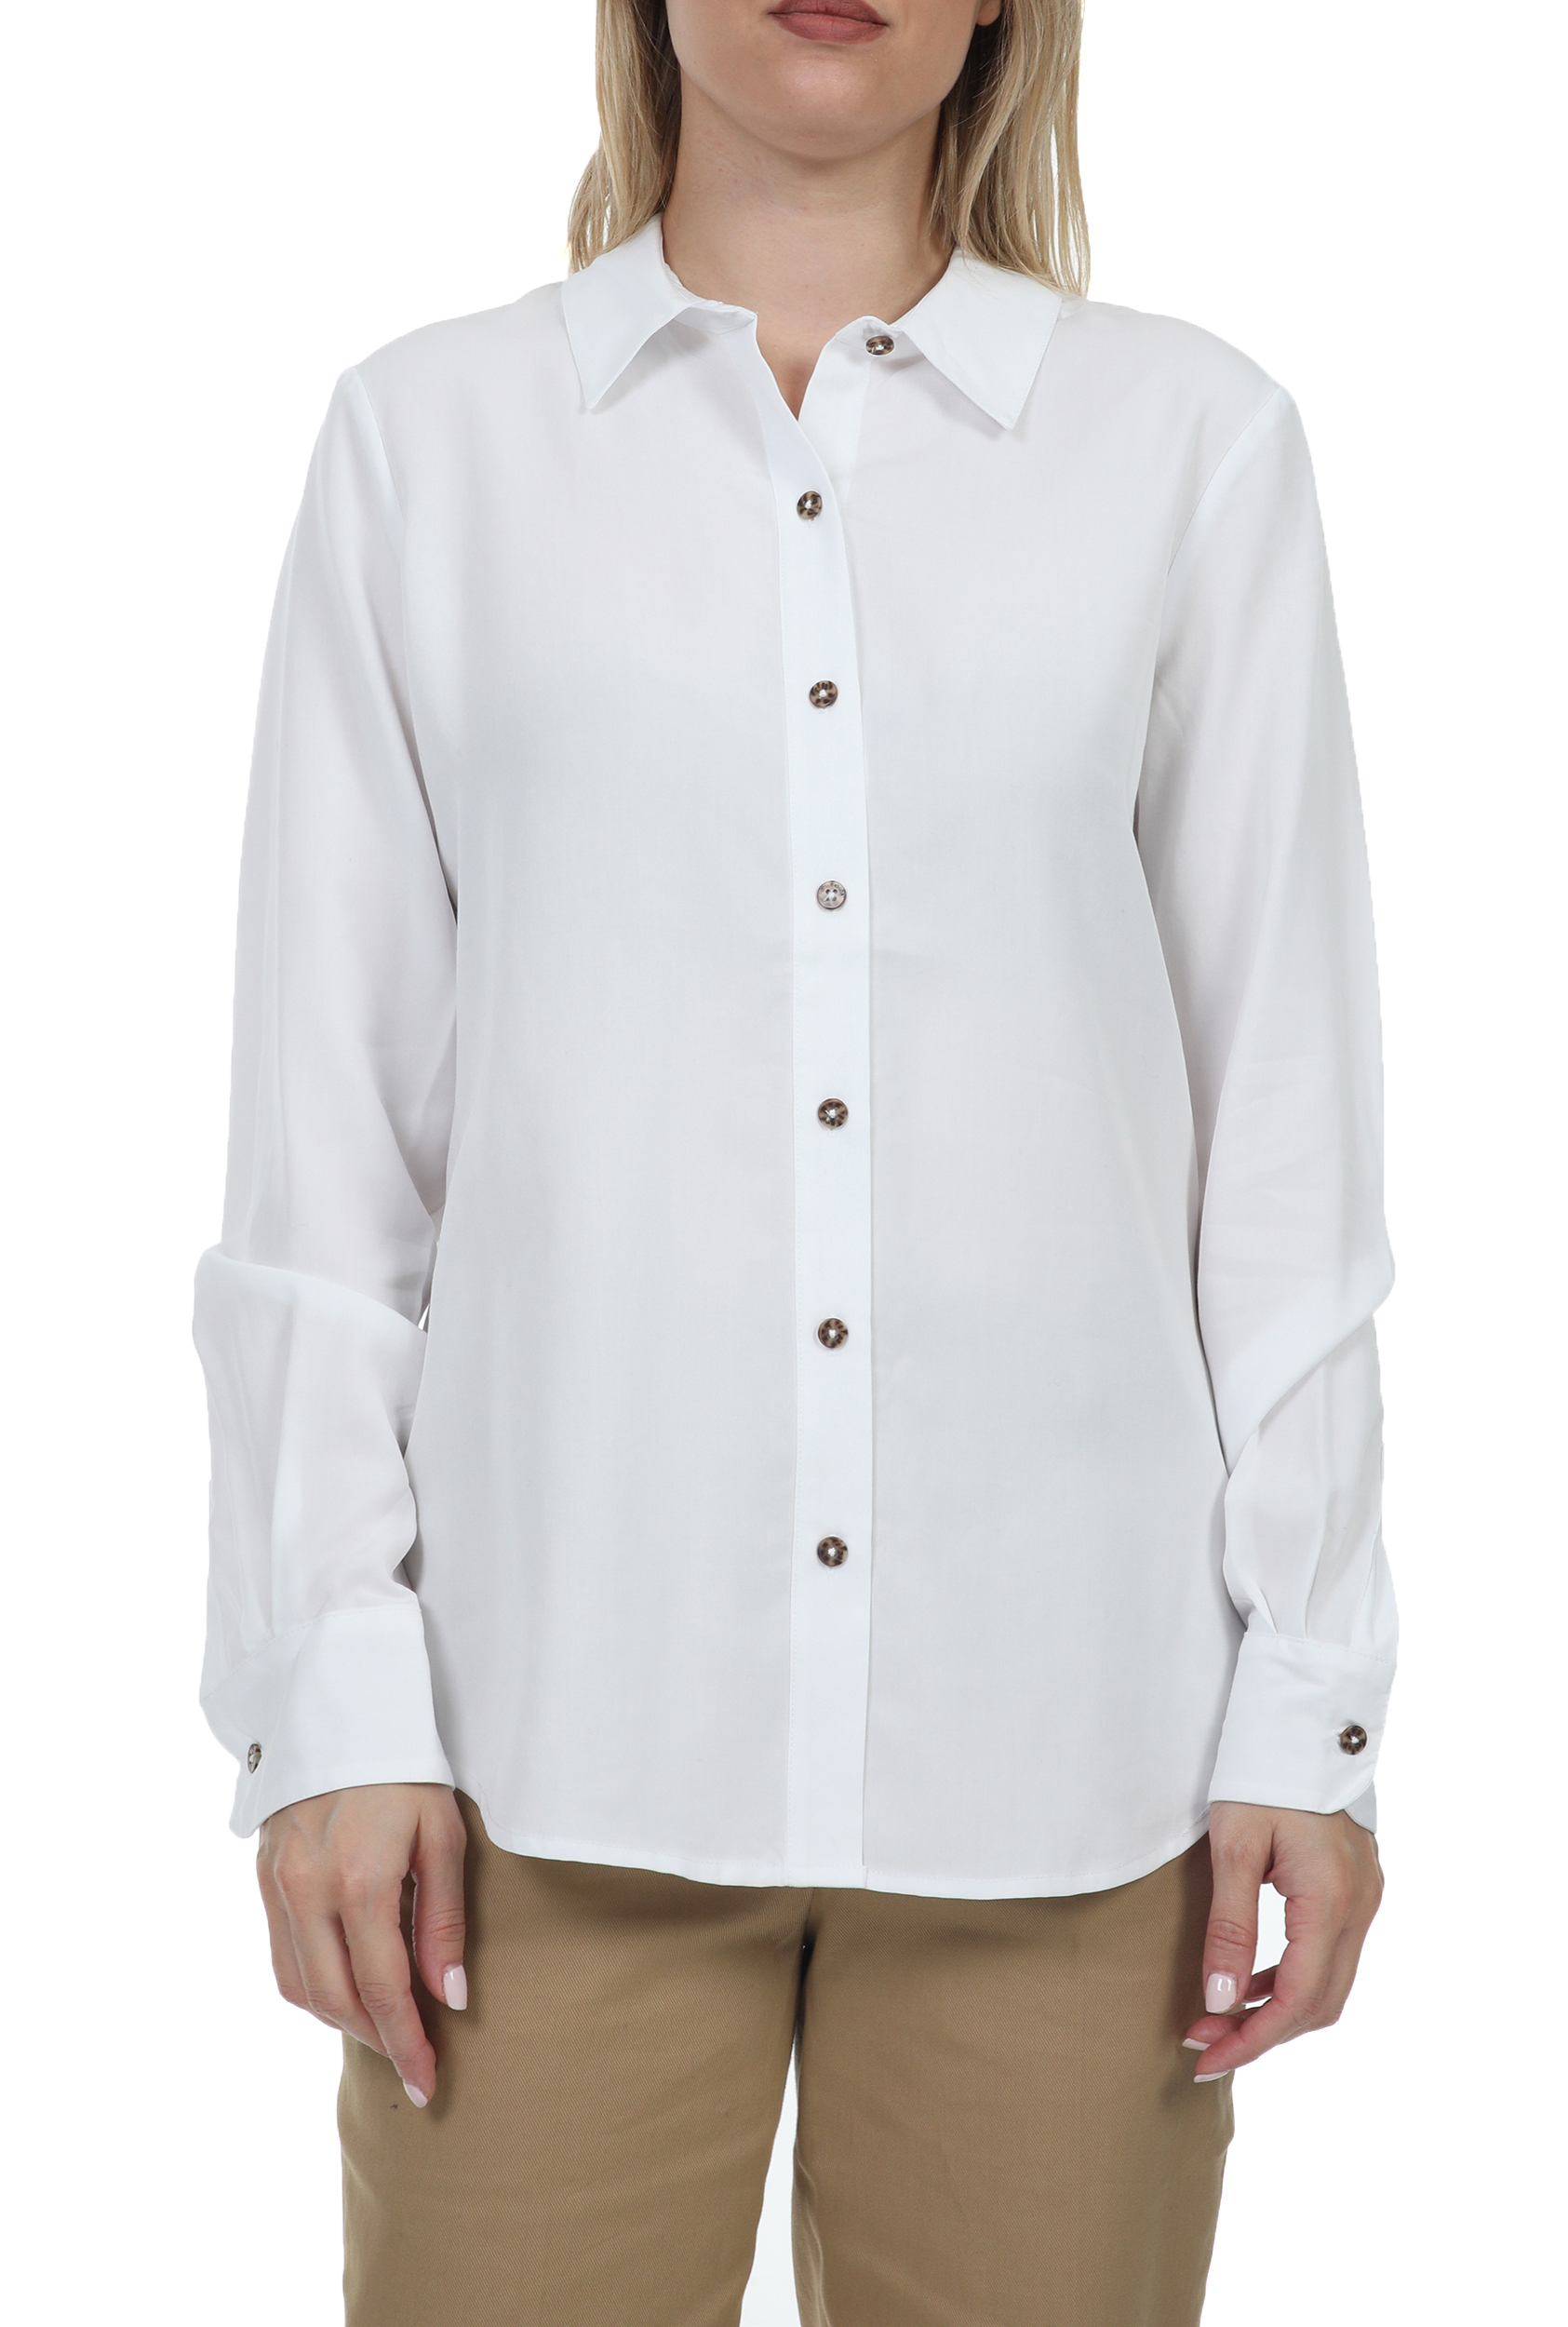 SCOTCH & SODA SCOTCH & SODA - Γυναικείο πουκάμισο SCOTCH & SODA λευκό